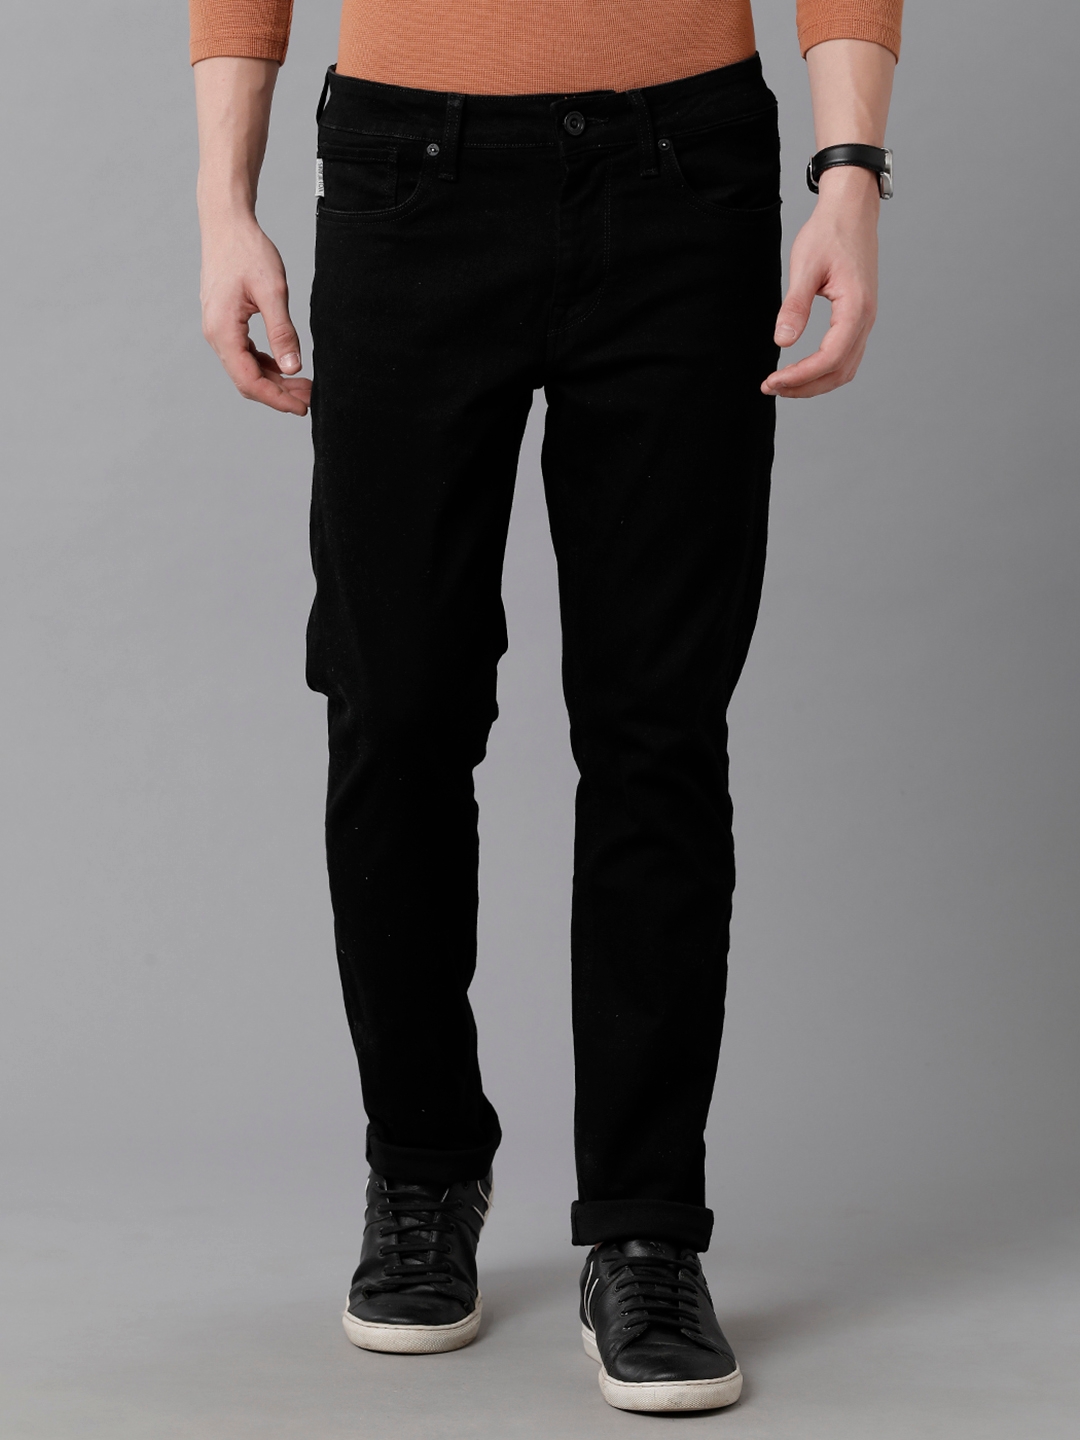 VOI JEANS Men's Solid Black Cotton Blend Slim Fit Mid Rise Jeans